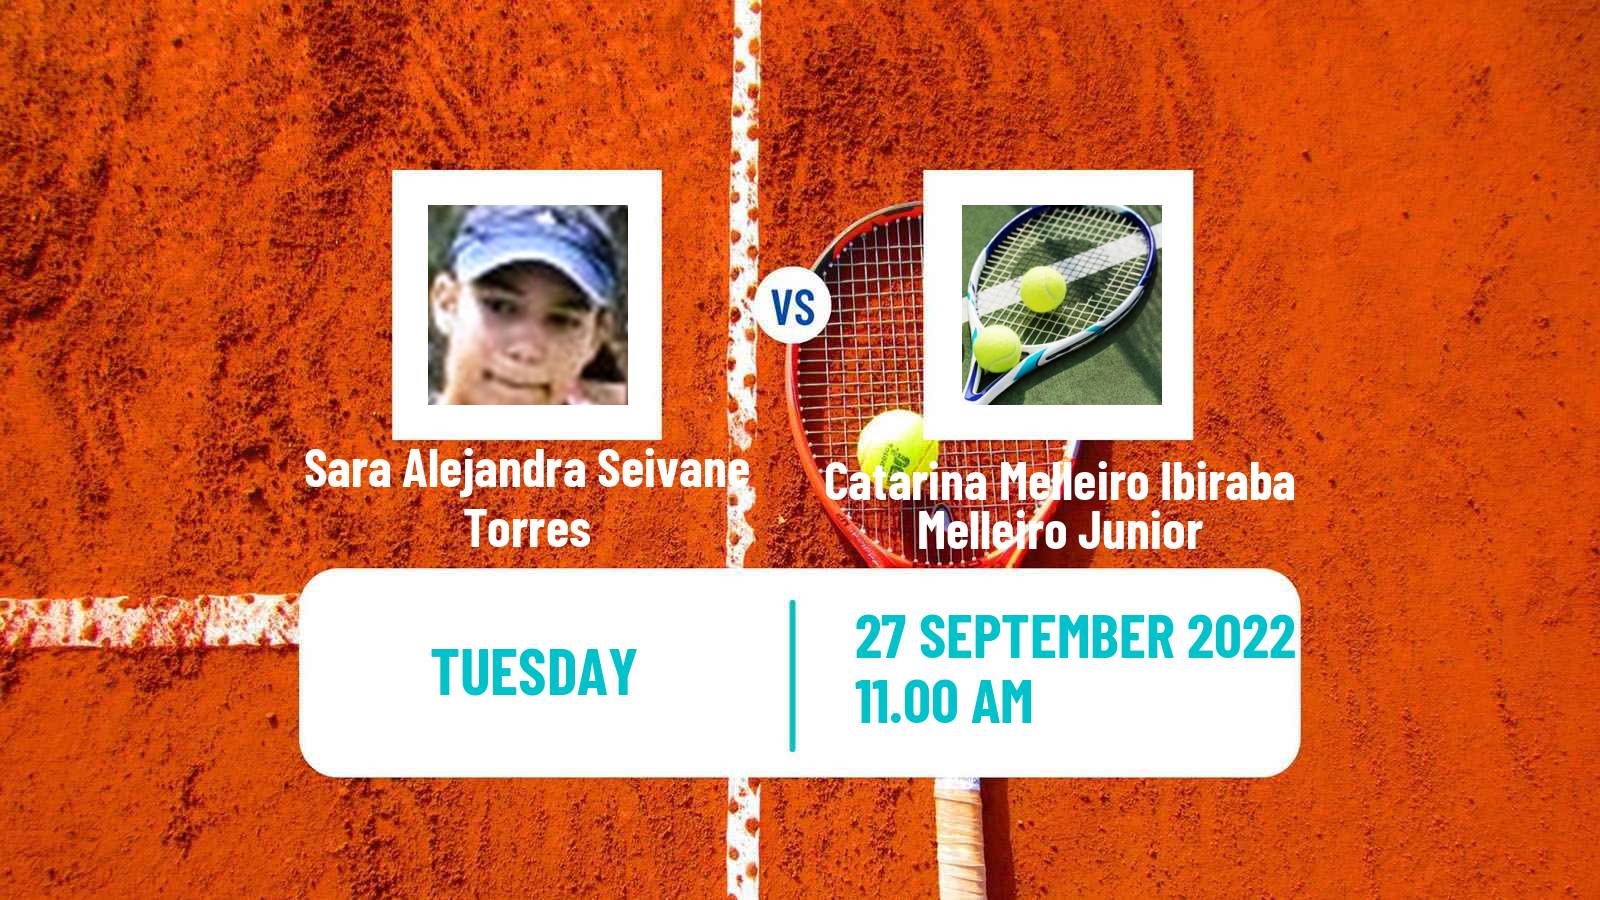 Tennis ITF Tournaments Sara Alejandra Seivane Torres - Catarina Melleiro Ibiraba Melleiro Junior